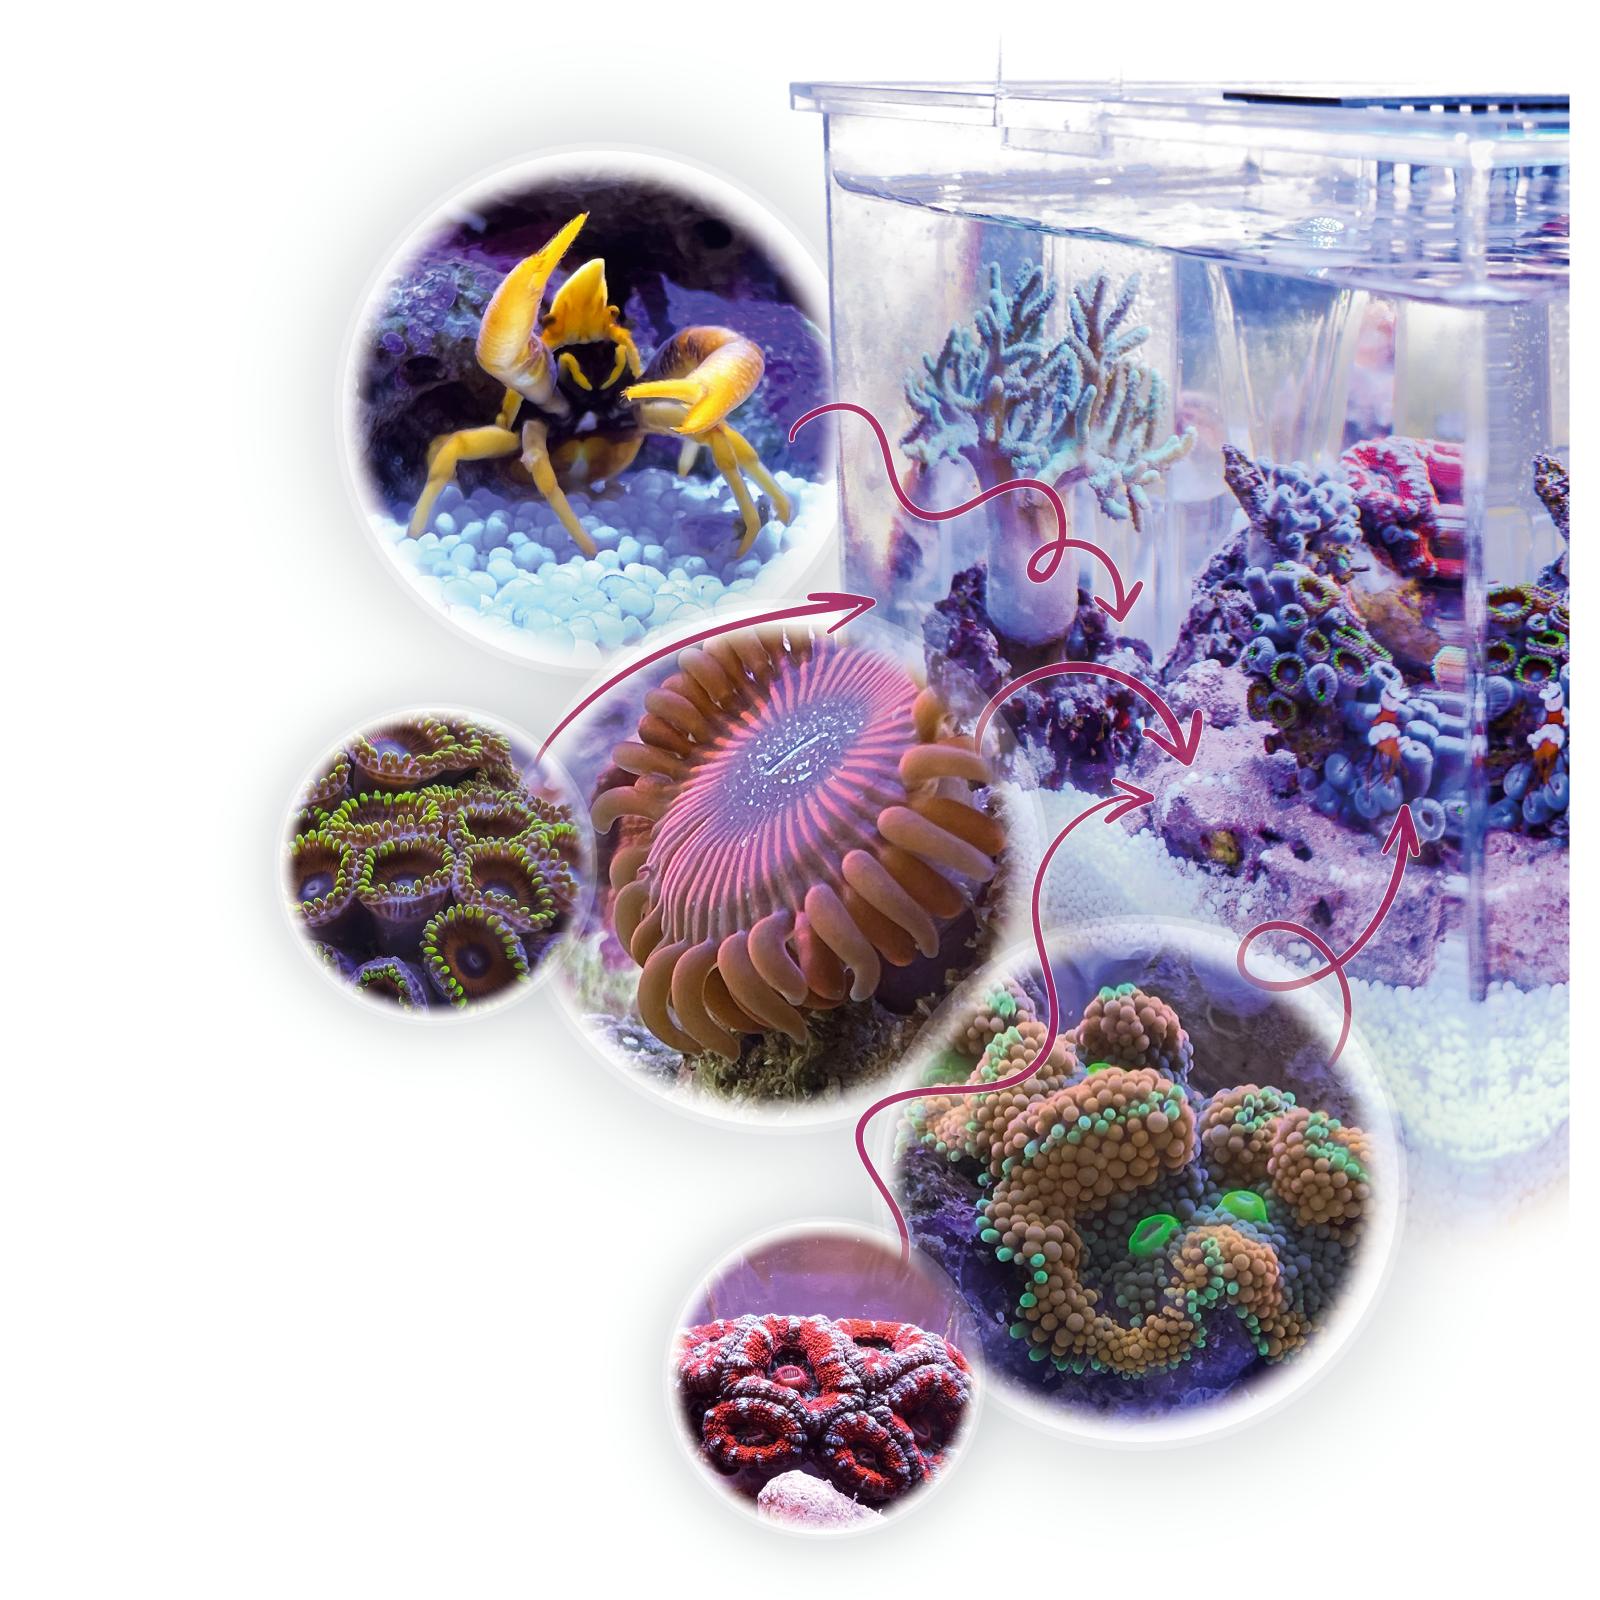 aqua-medic-armatus-xs-micro-aquarium-de-4l-tout-en-un-avec-filtration-integre-dans-le-meuble-10